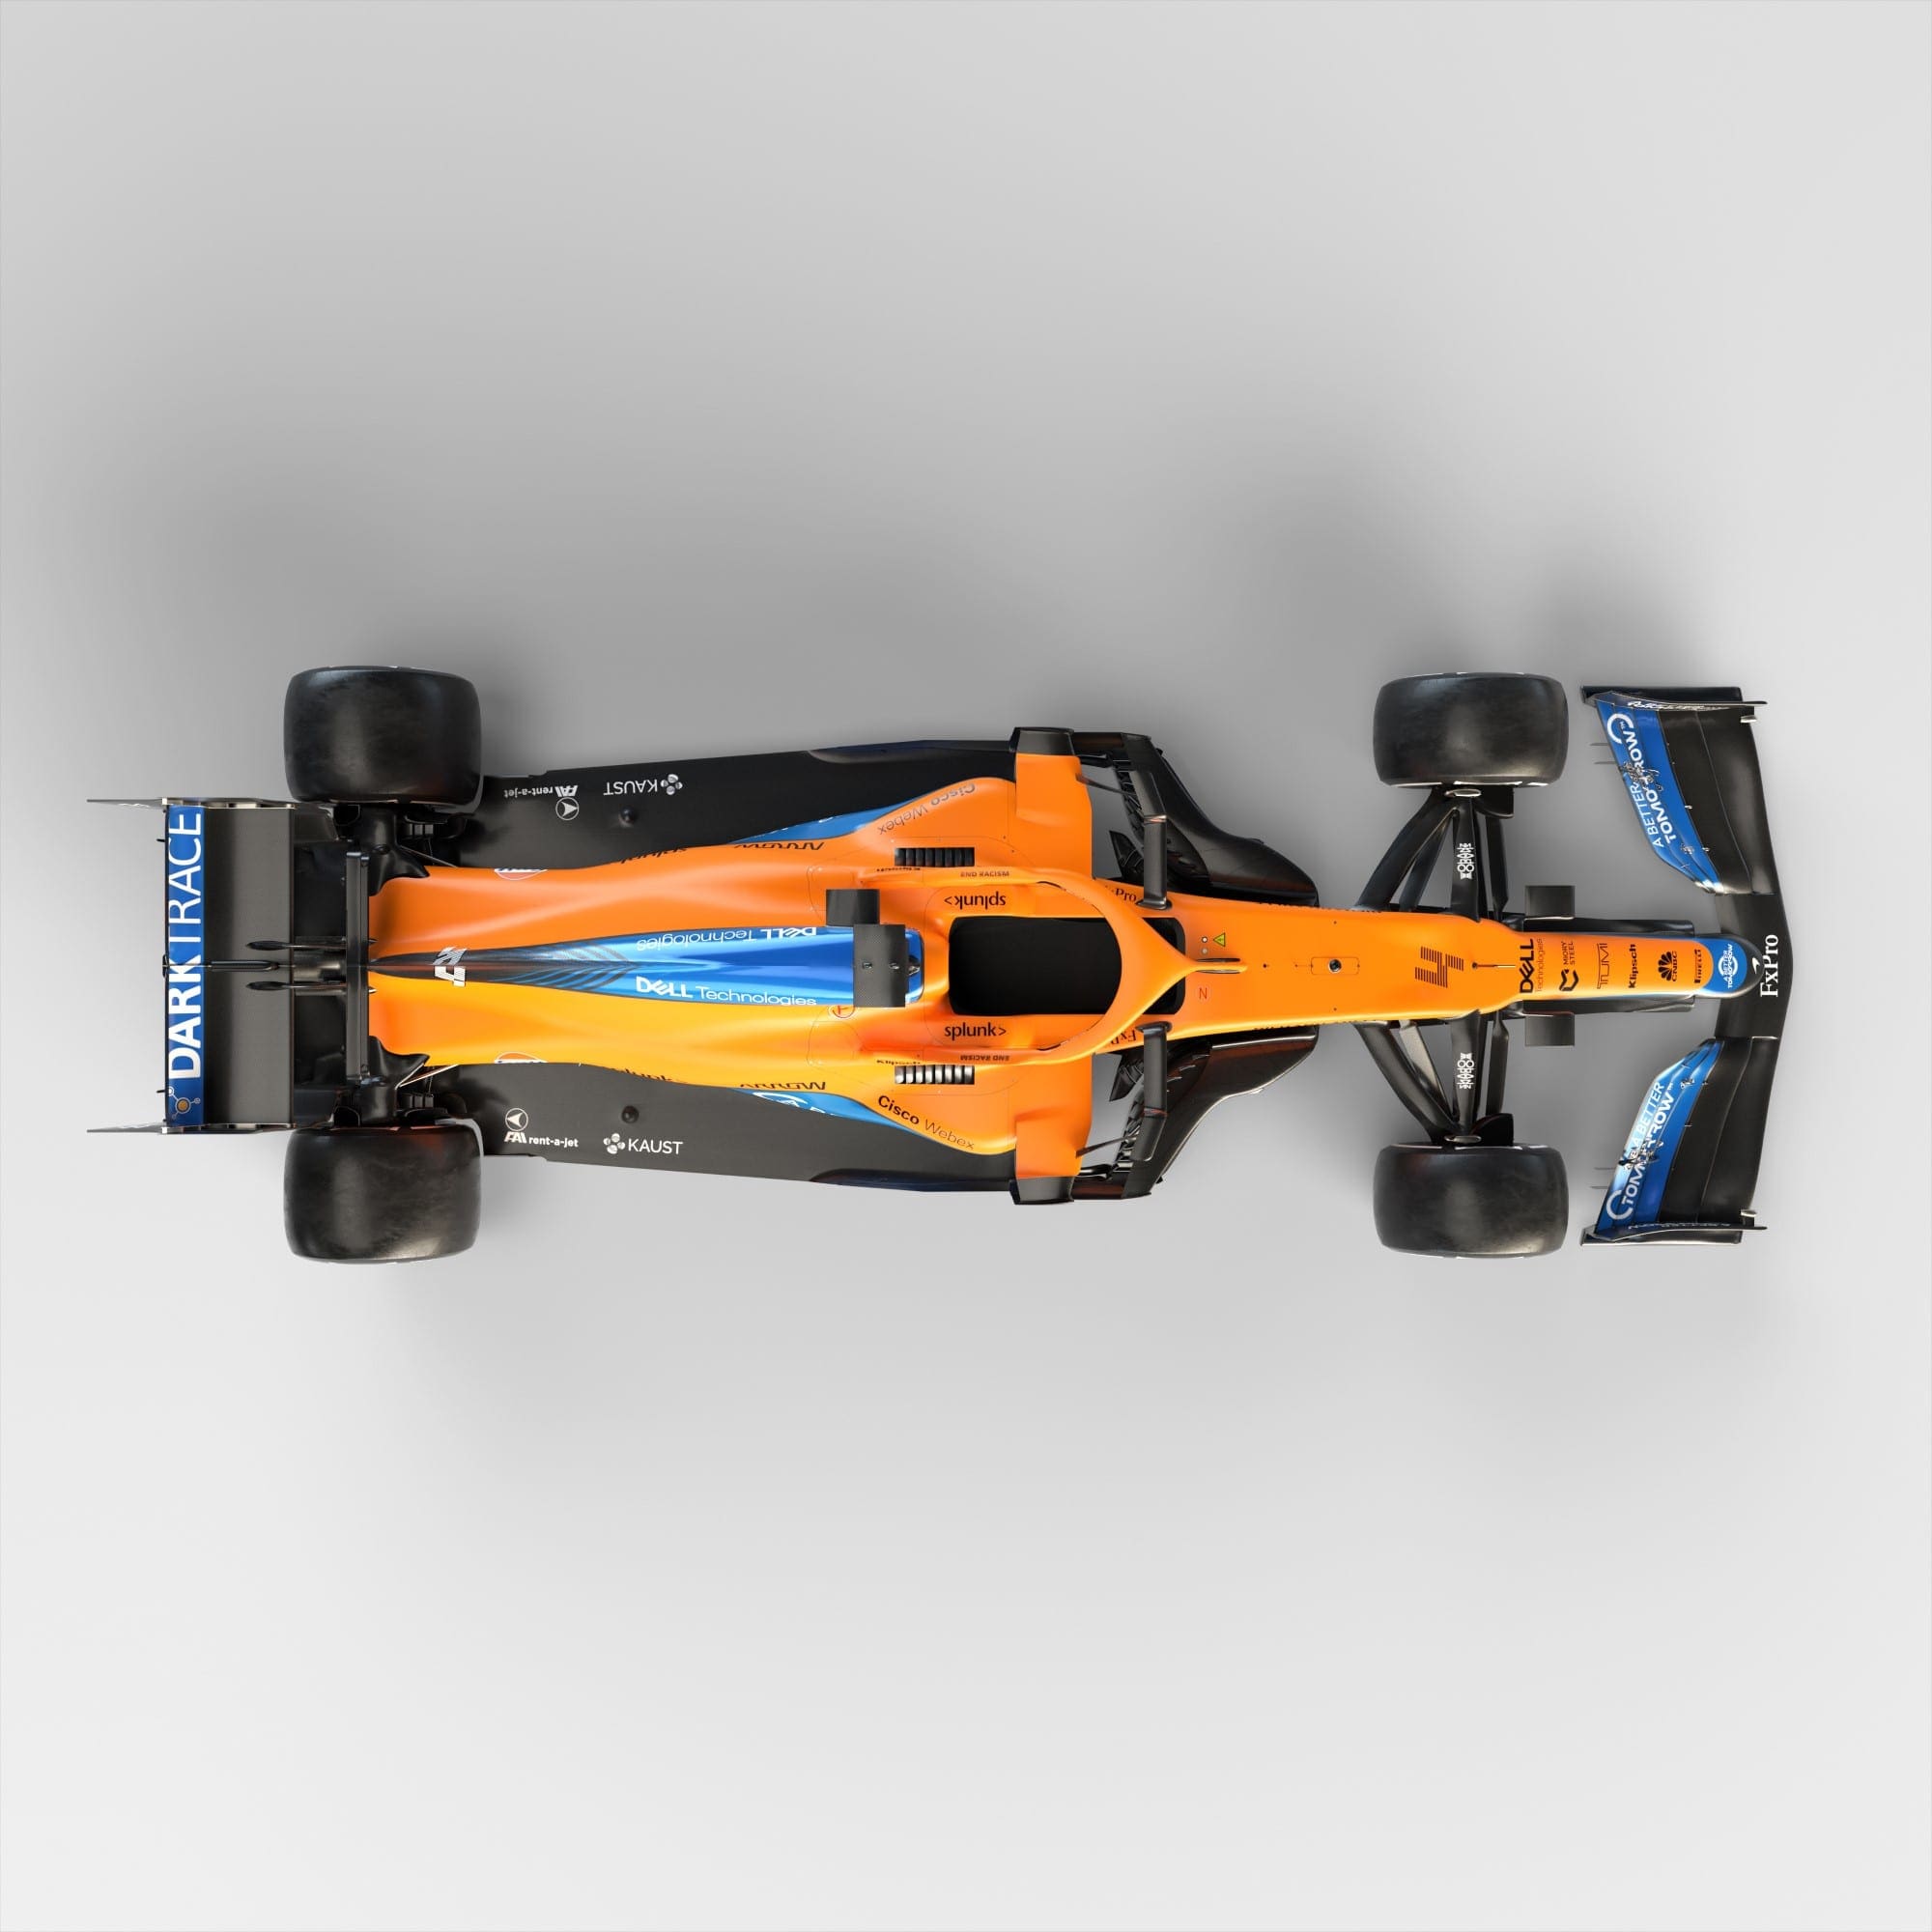 Confira as fotos do MCL35M, o carro da McLaren para a F1 2021